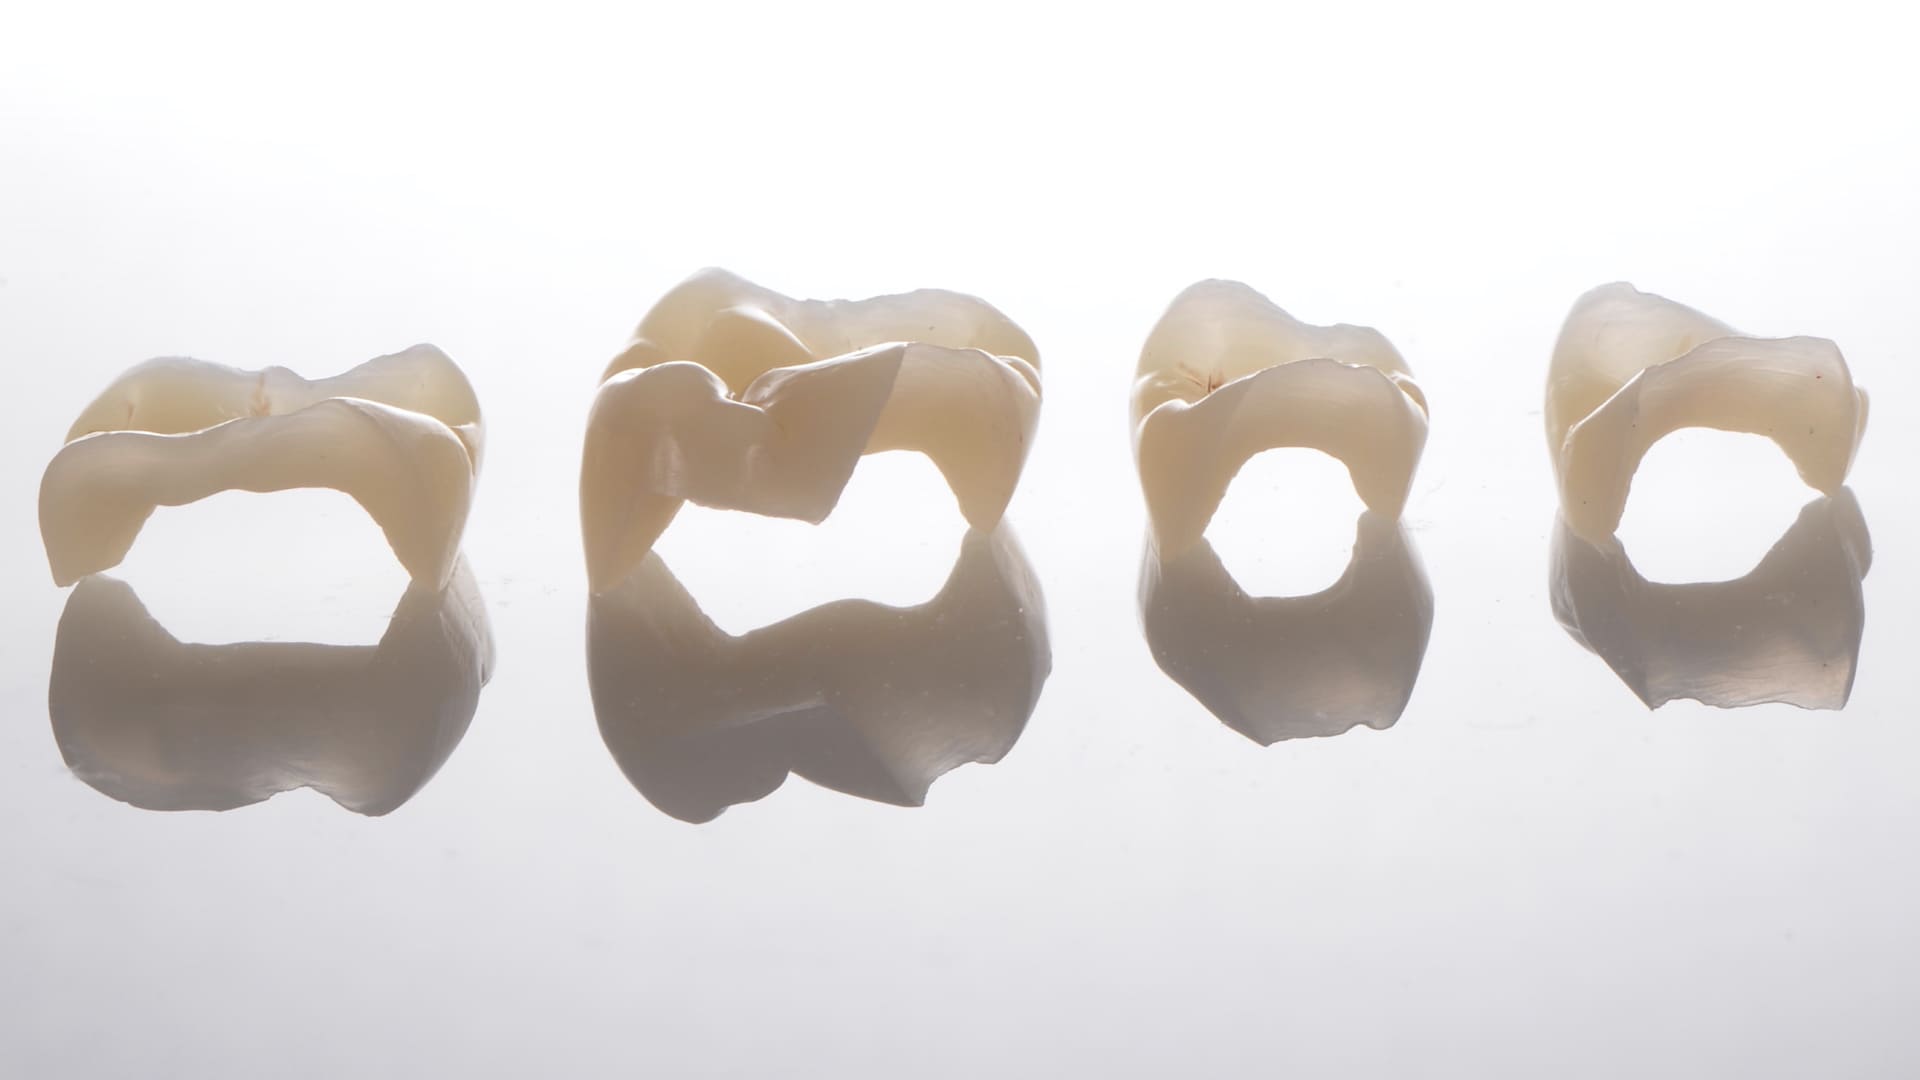 quattro denti in fila su fondo bianco. rappresentazione linea xline di nexxta laboratorio odontotecnico con sede a modena, bologna, rimini e udine